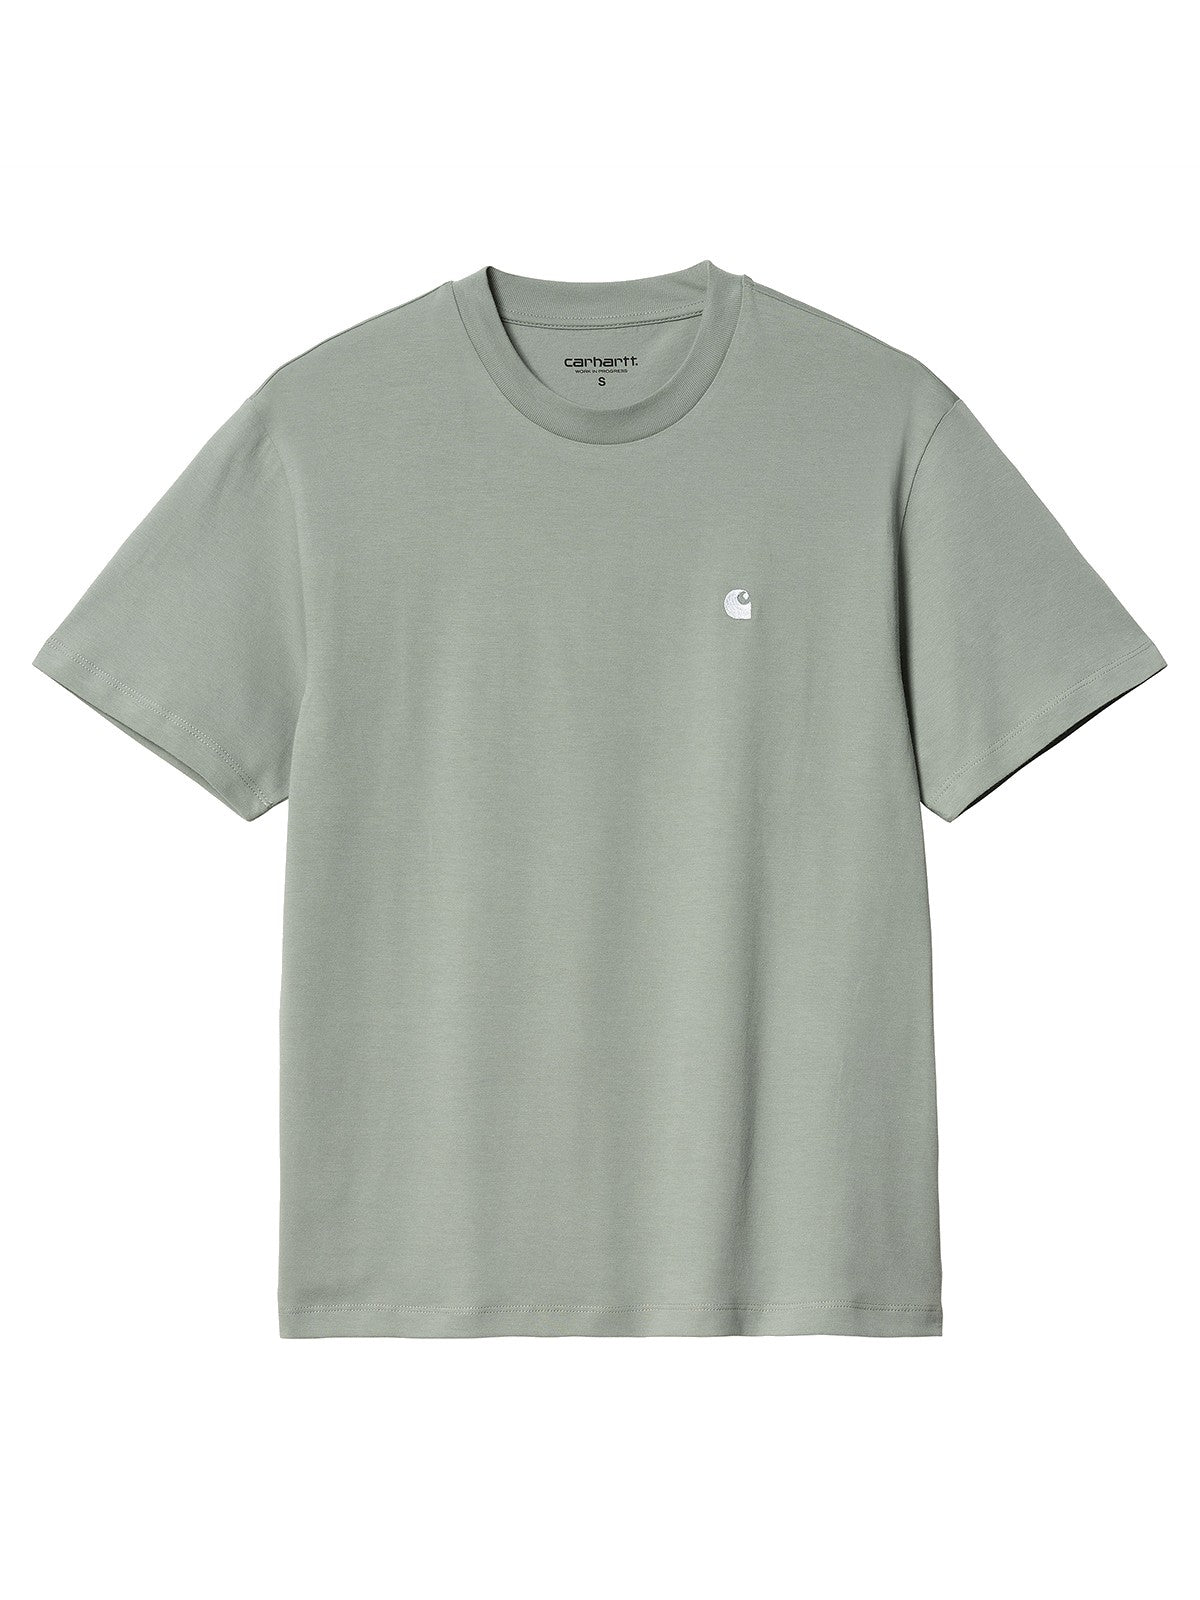 T-shirt Donna Carhartt Wip - W' S/S Casey T-Shirt - Verde